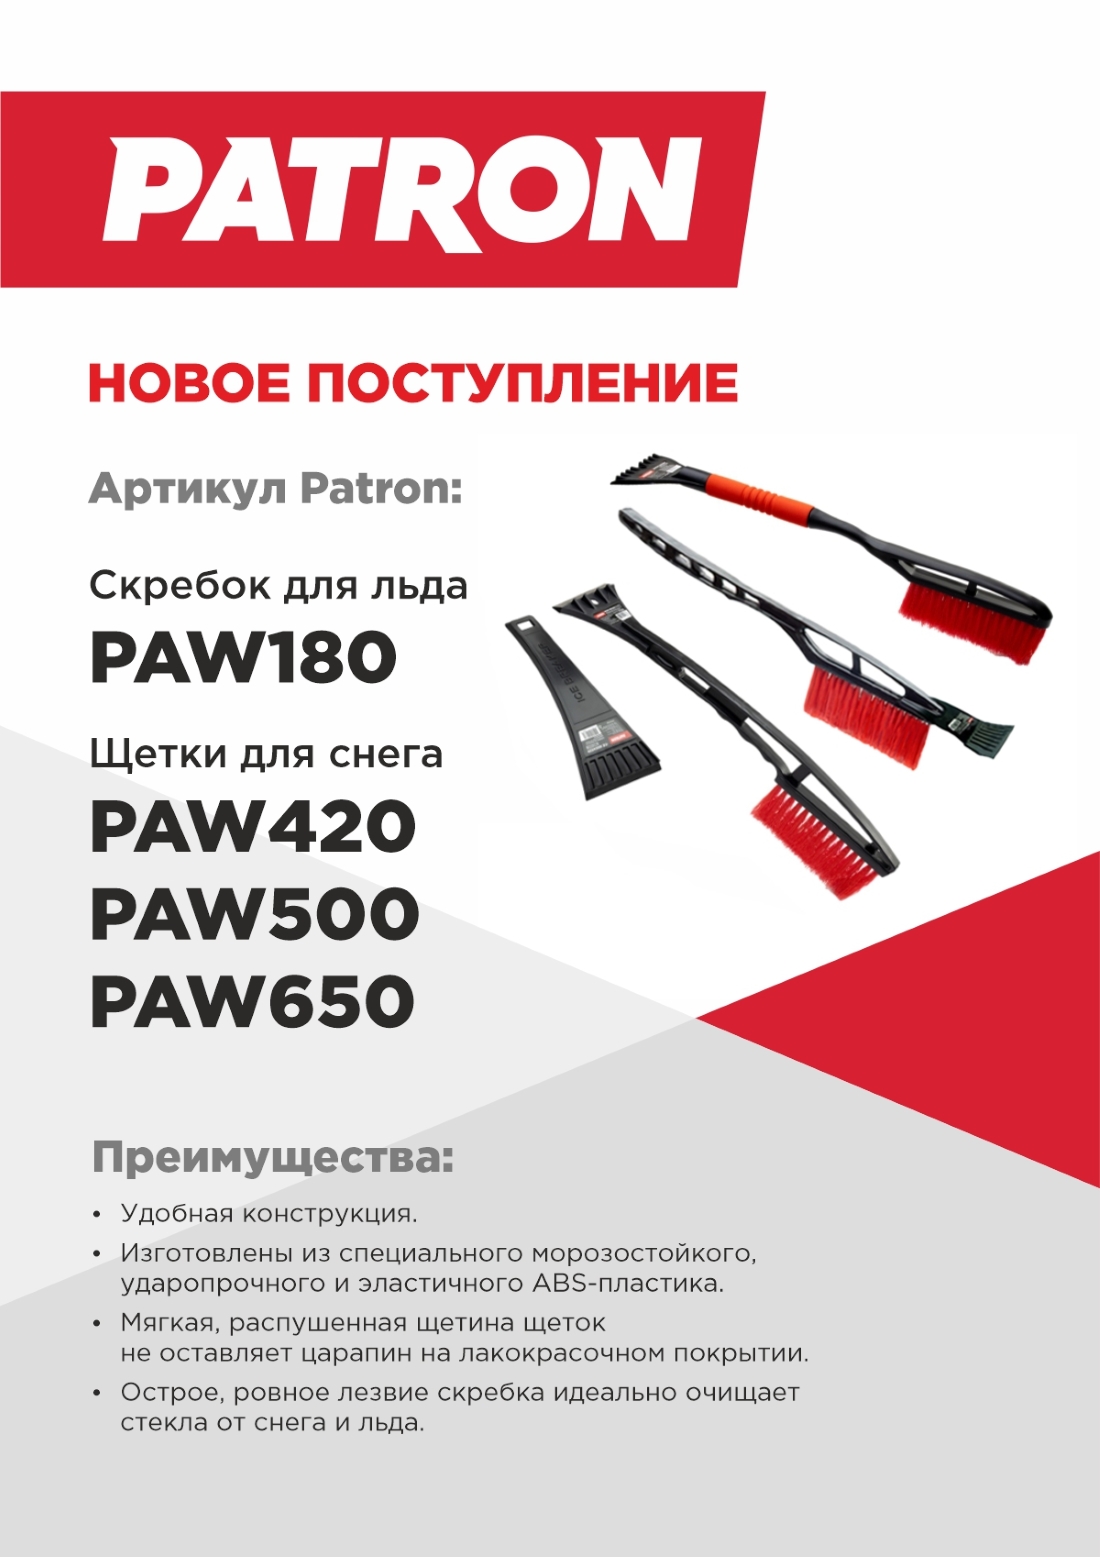 03102022 NEW_Patron_PAW_180_PAW500_PAW420